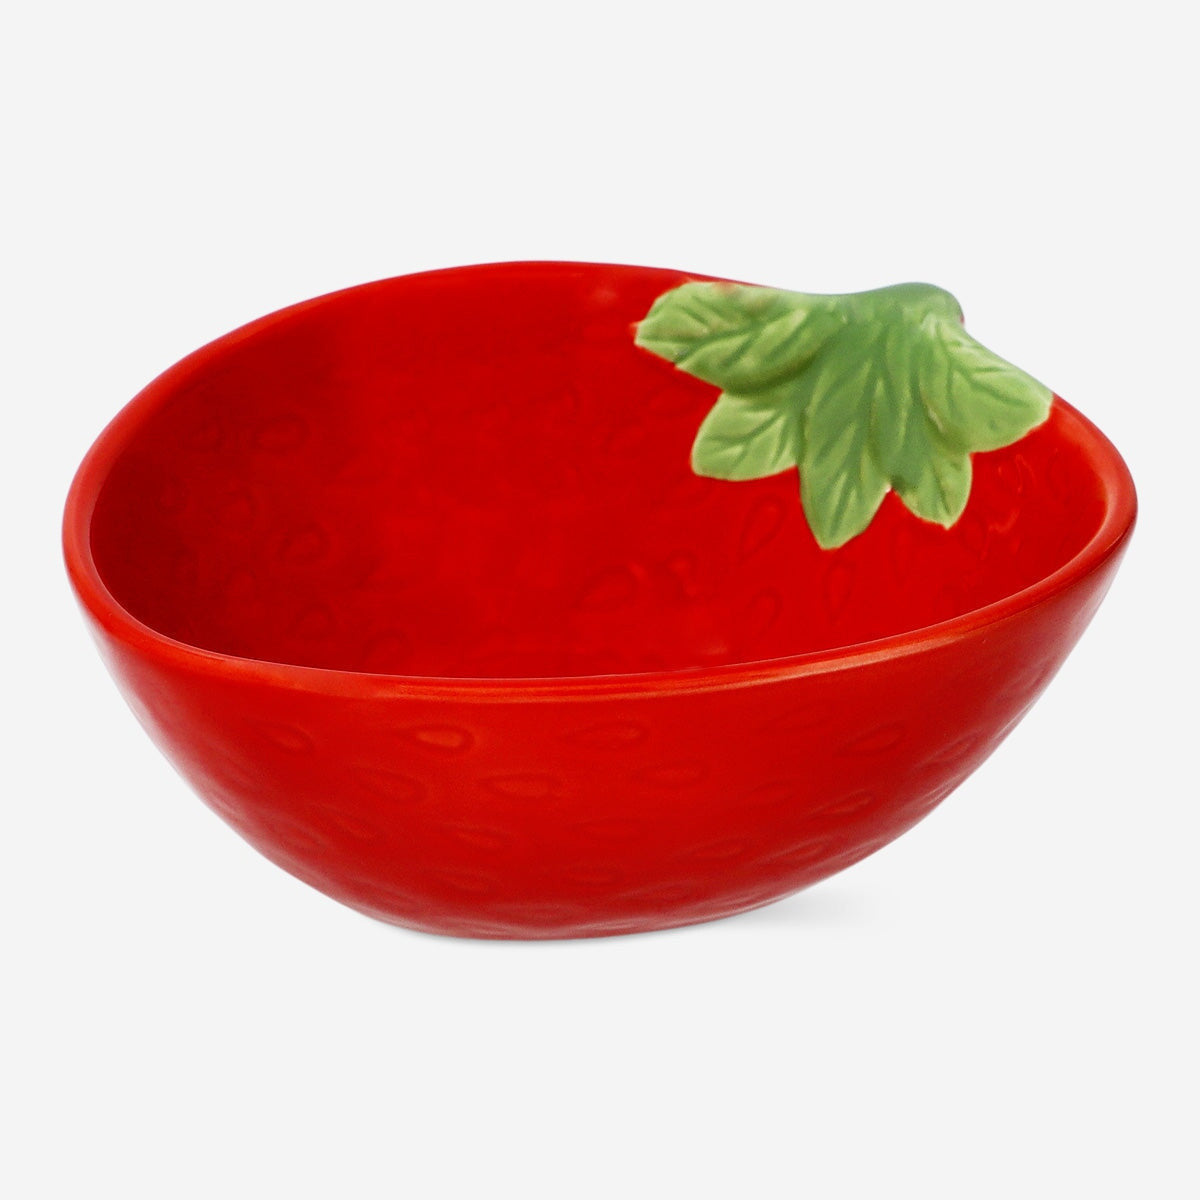 Image of Strawberry bowl. Large